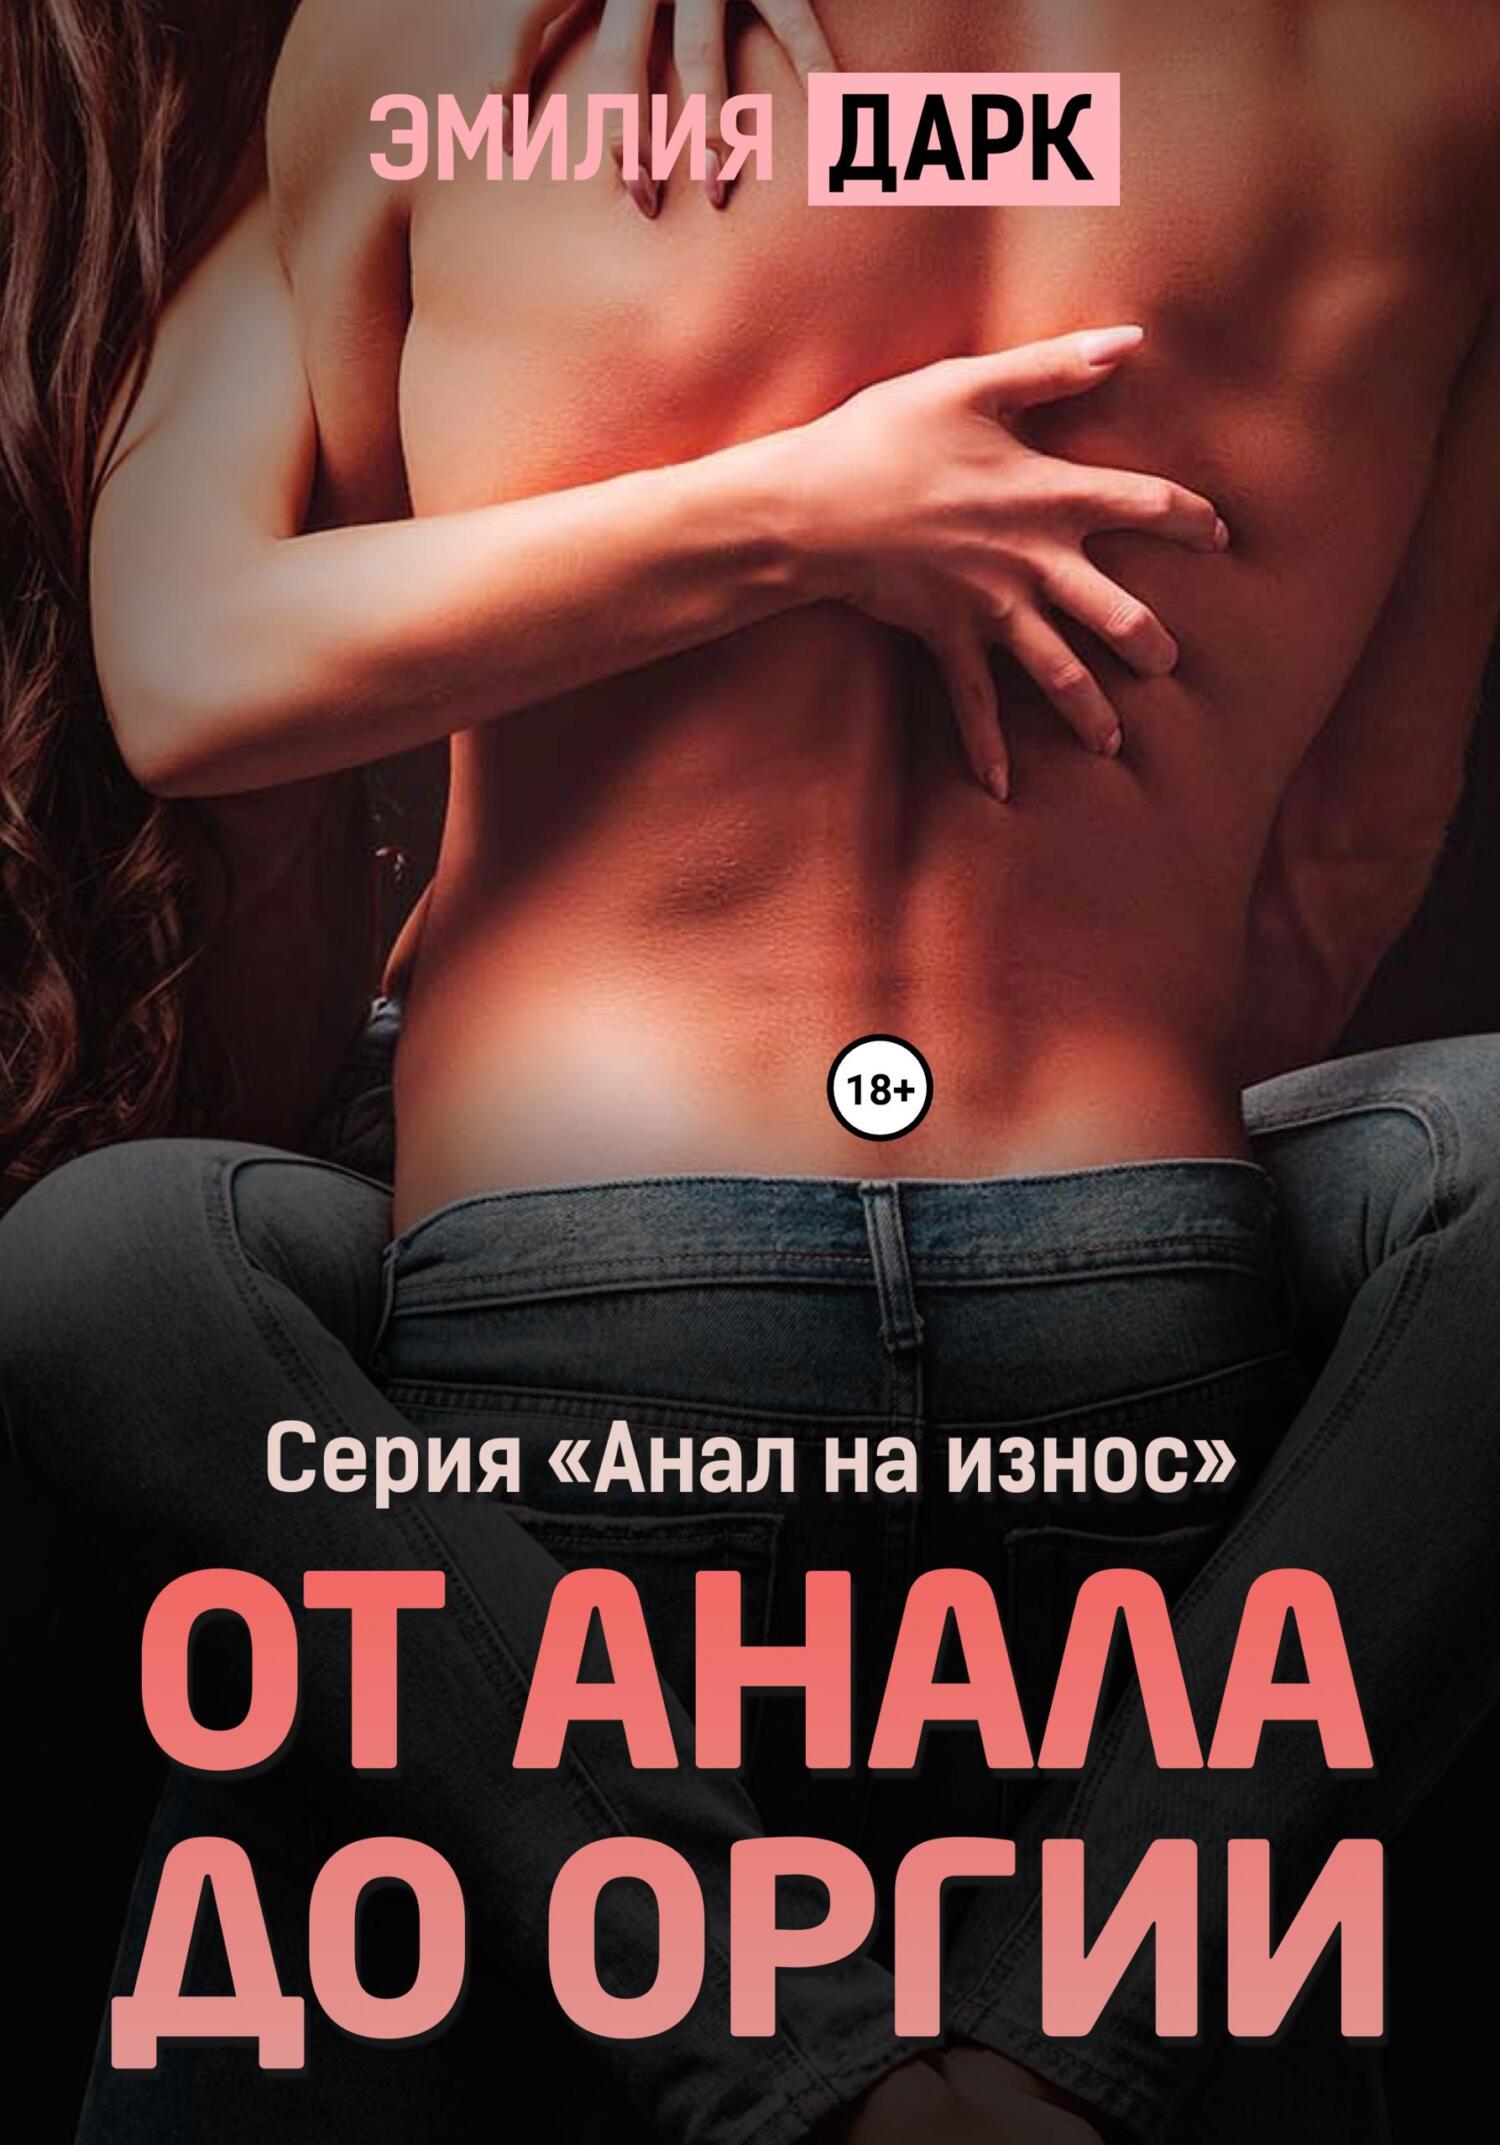 Порно рассказы с традиционным сексом читать онлайн